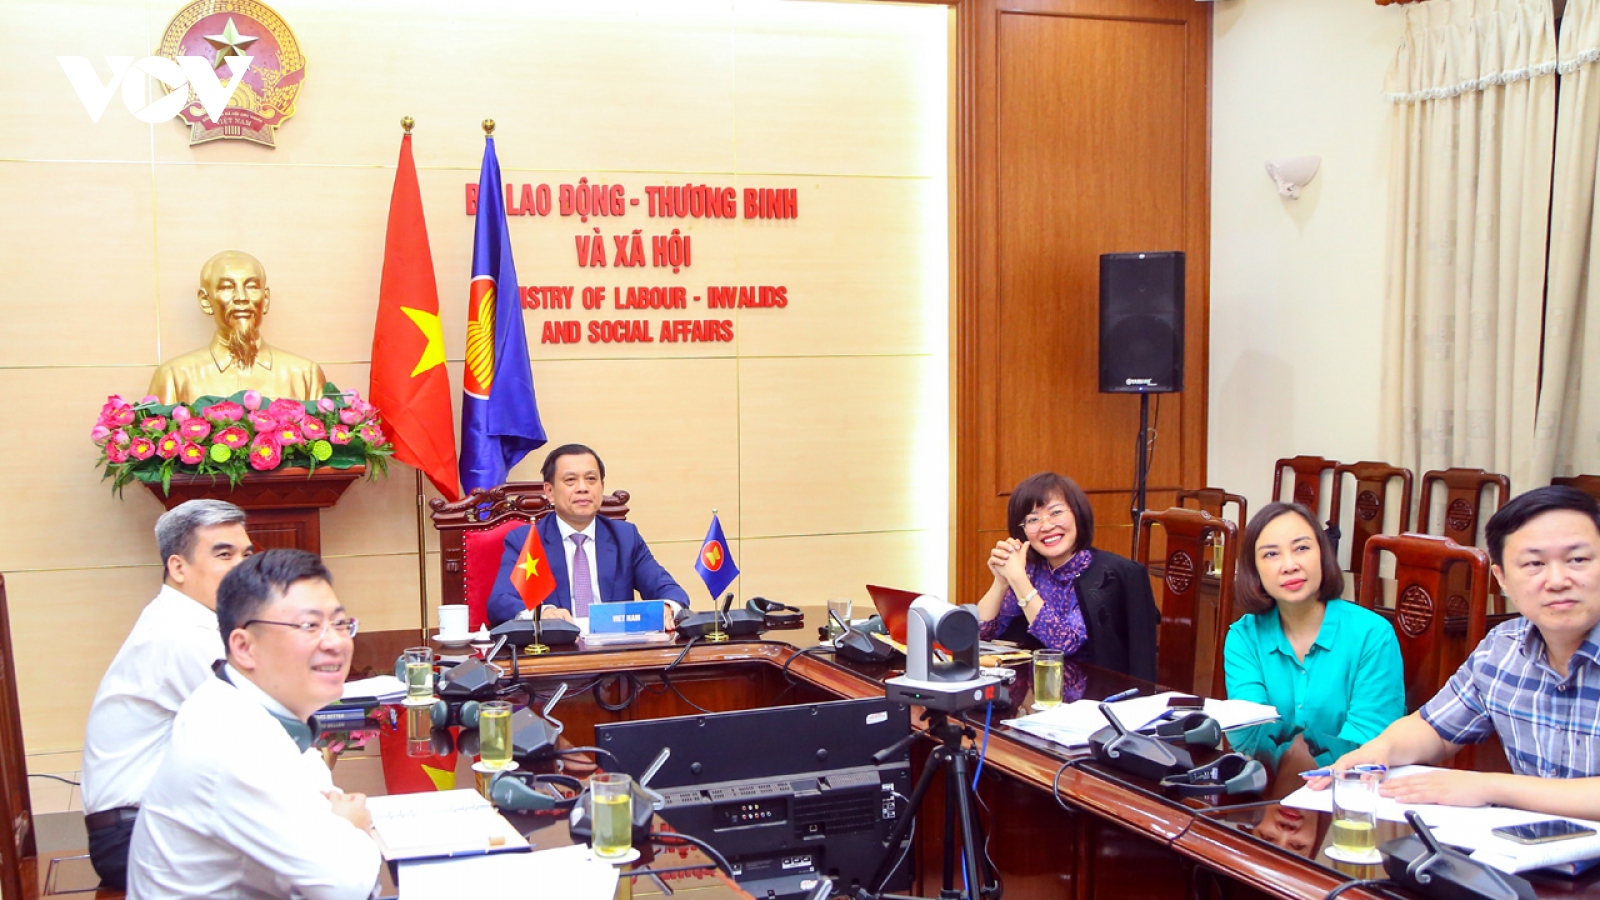 Việt Nam cam kết hợp tác chặt chẽ với các nước quản lý lao động di cư qua biên giới